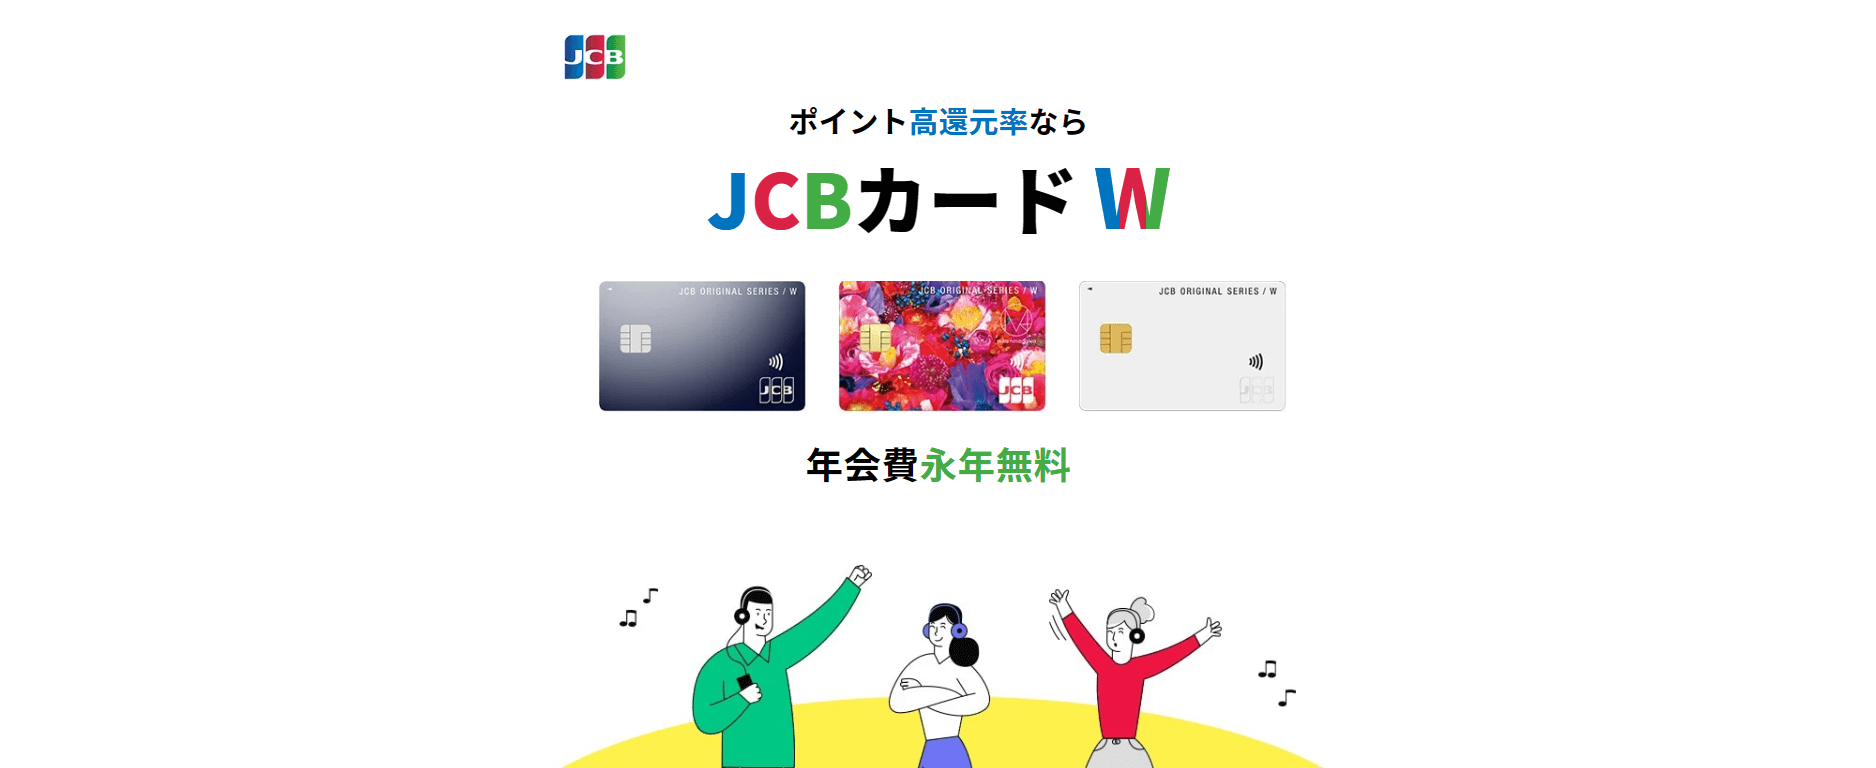 Amazonクレジットカード_JCBカード W